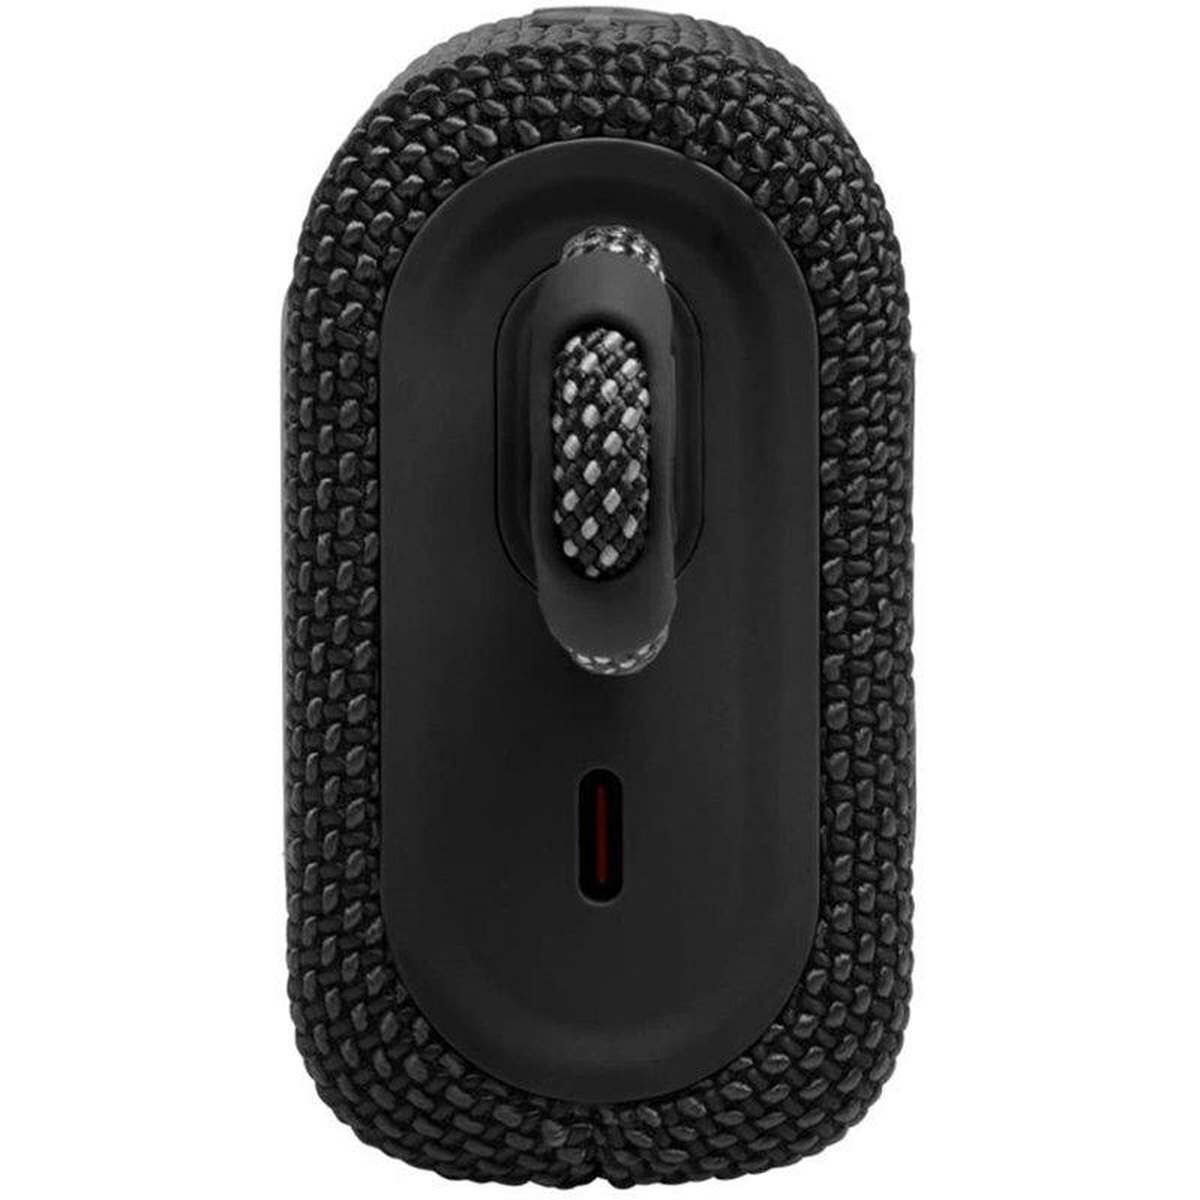 Kép 2/5 - JBL Go 3 Bluetooth Wireless Speaker, hordozható hangszóró fekete EU